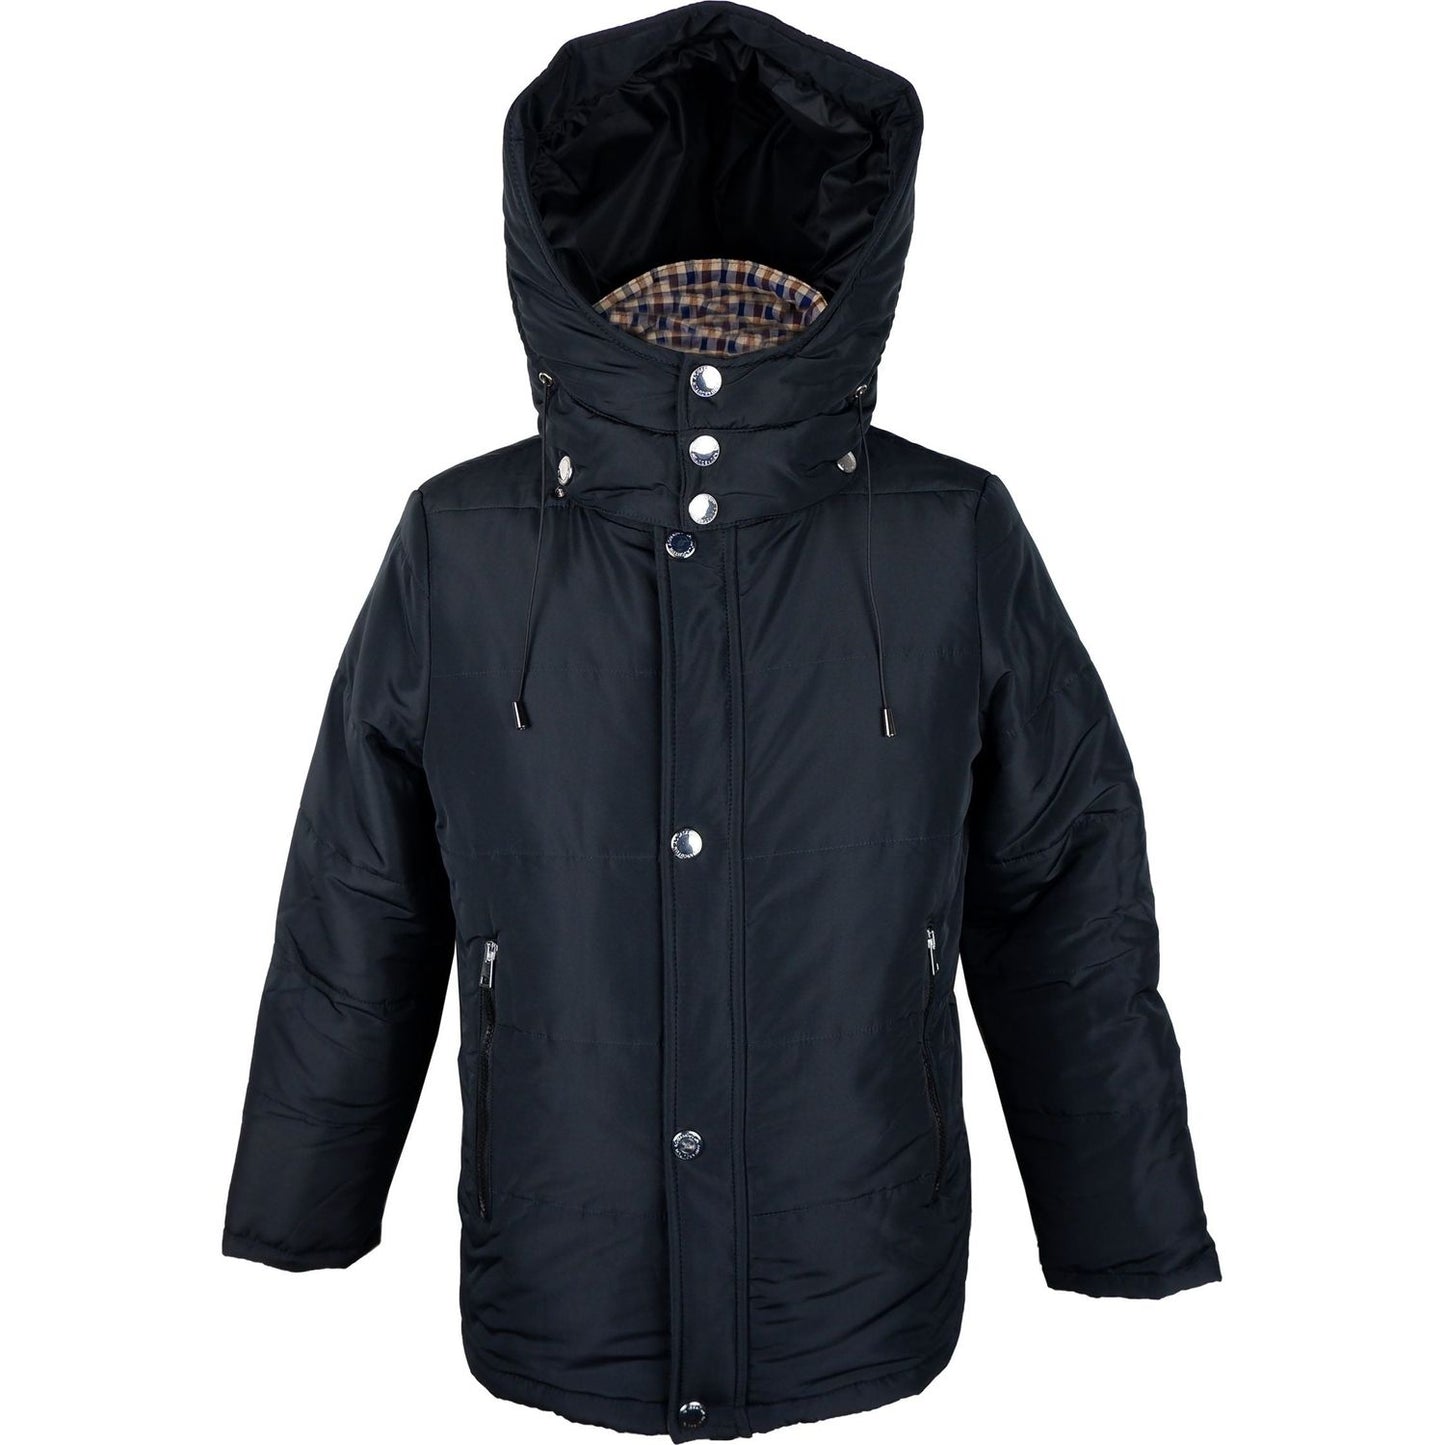 Aquascutum Elegant Black Jacket with Removable Hood black-polyamide-jacket MAN COATS & JACKETS product-7482-2072374317-scaled-0c55cf64-92f.jpg